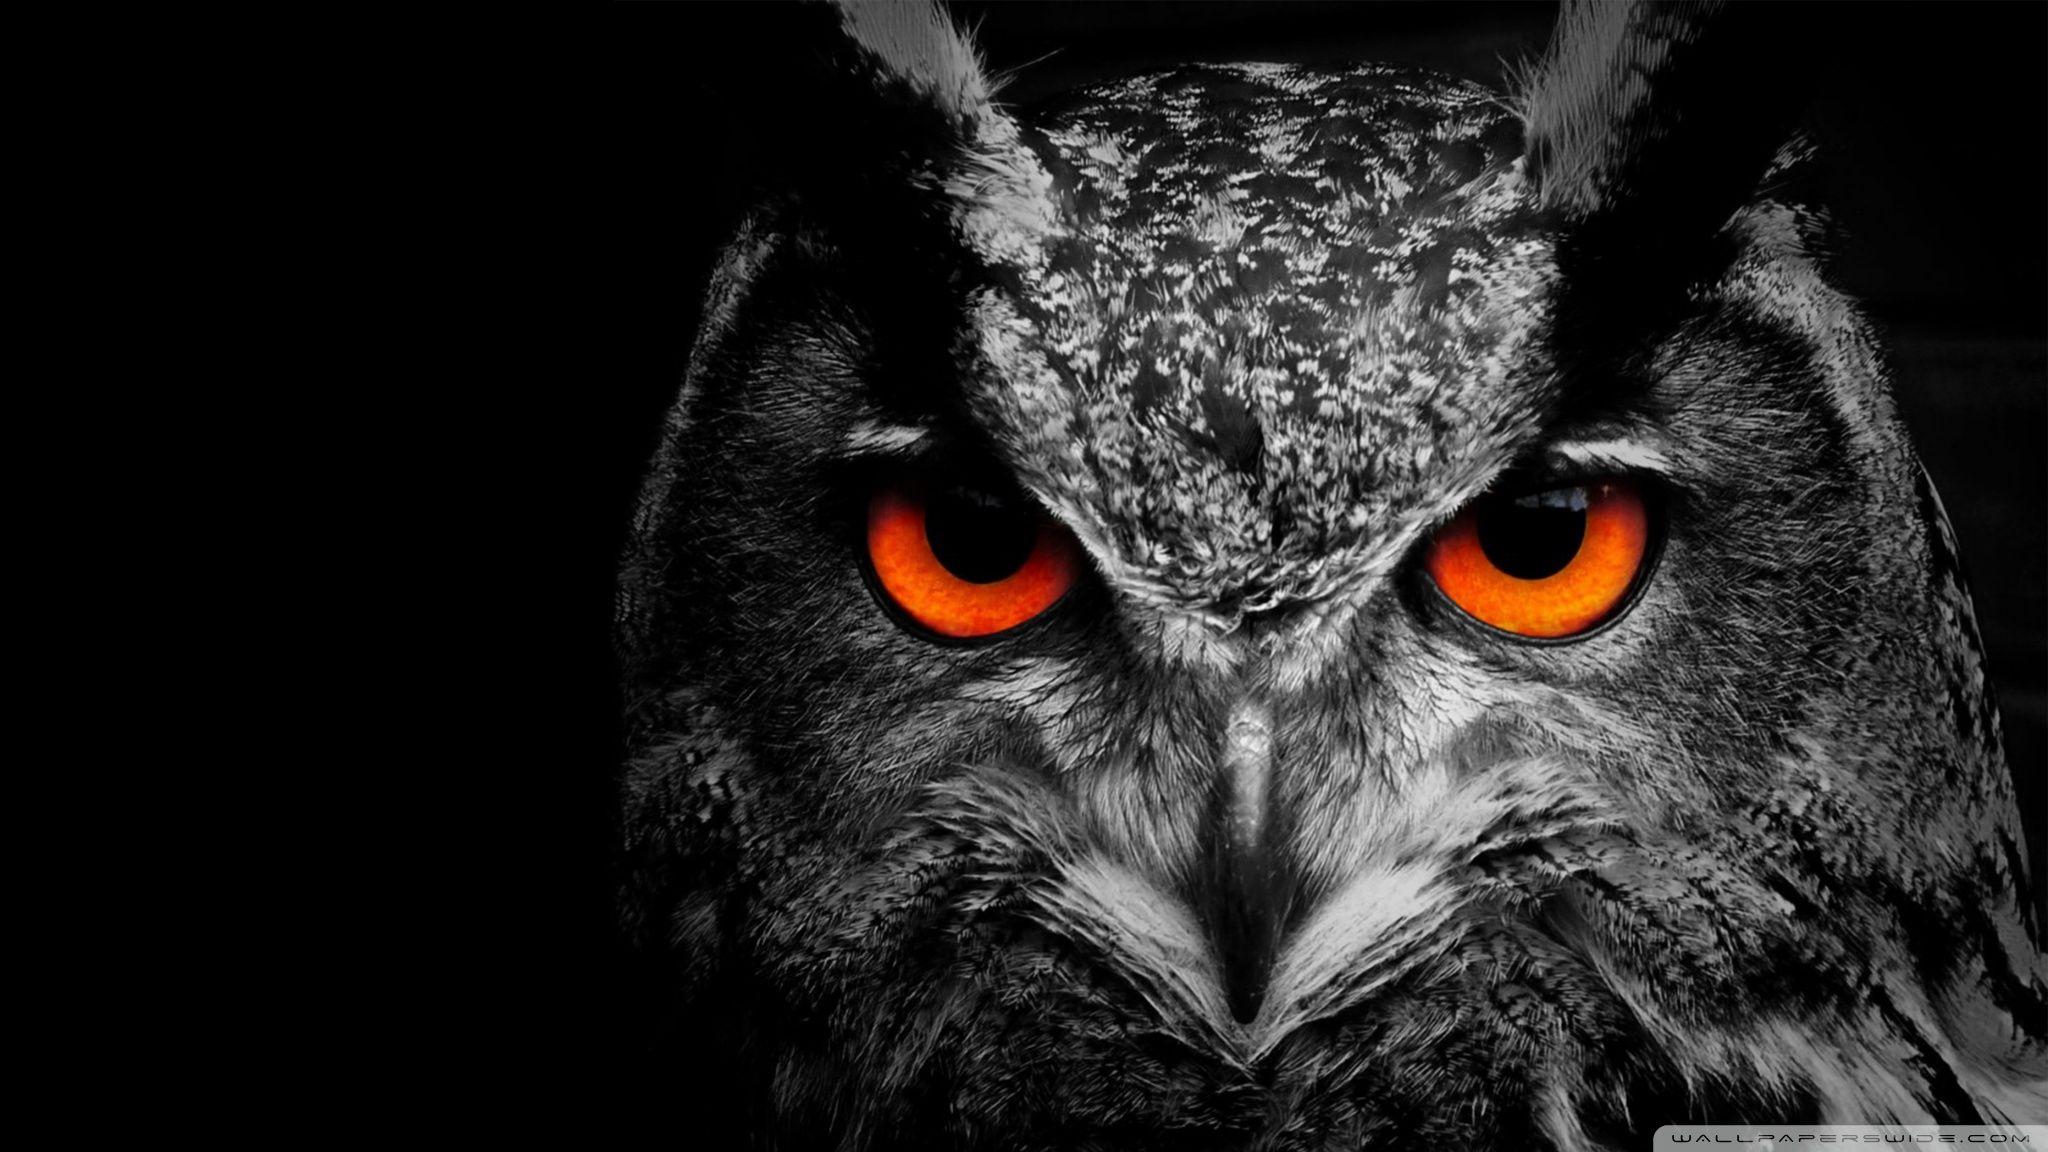 Owl Eye ❤ 4K HD Desktop Wallpaper for 4K Ultra HD TV • Wide & Ultra